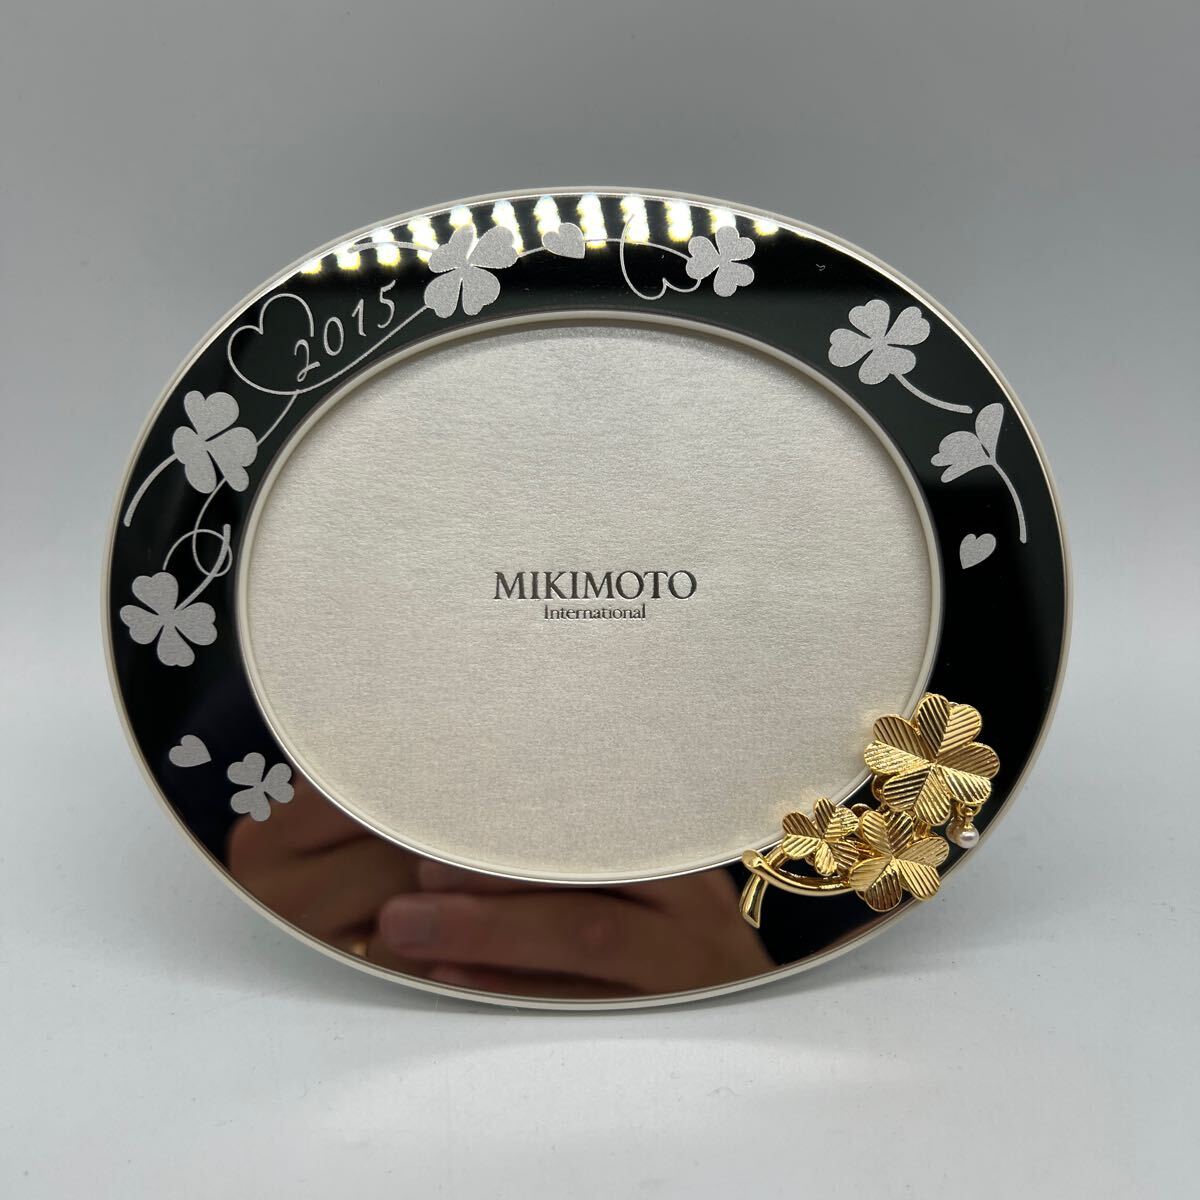  Mikimoto photo frame photo stand picture frame MIKIMOTO Mikimoto 